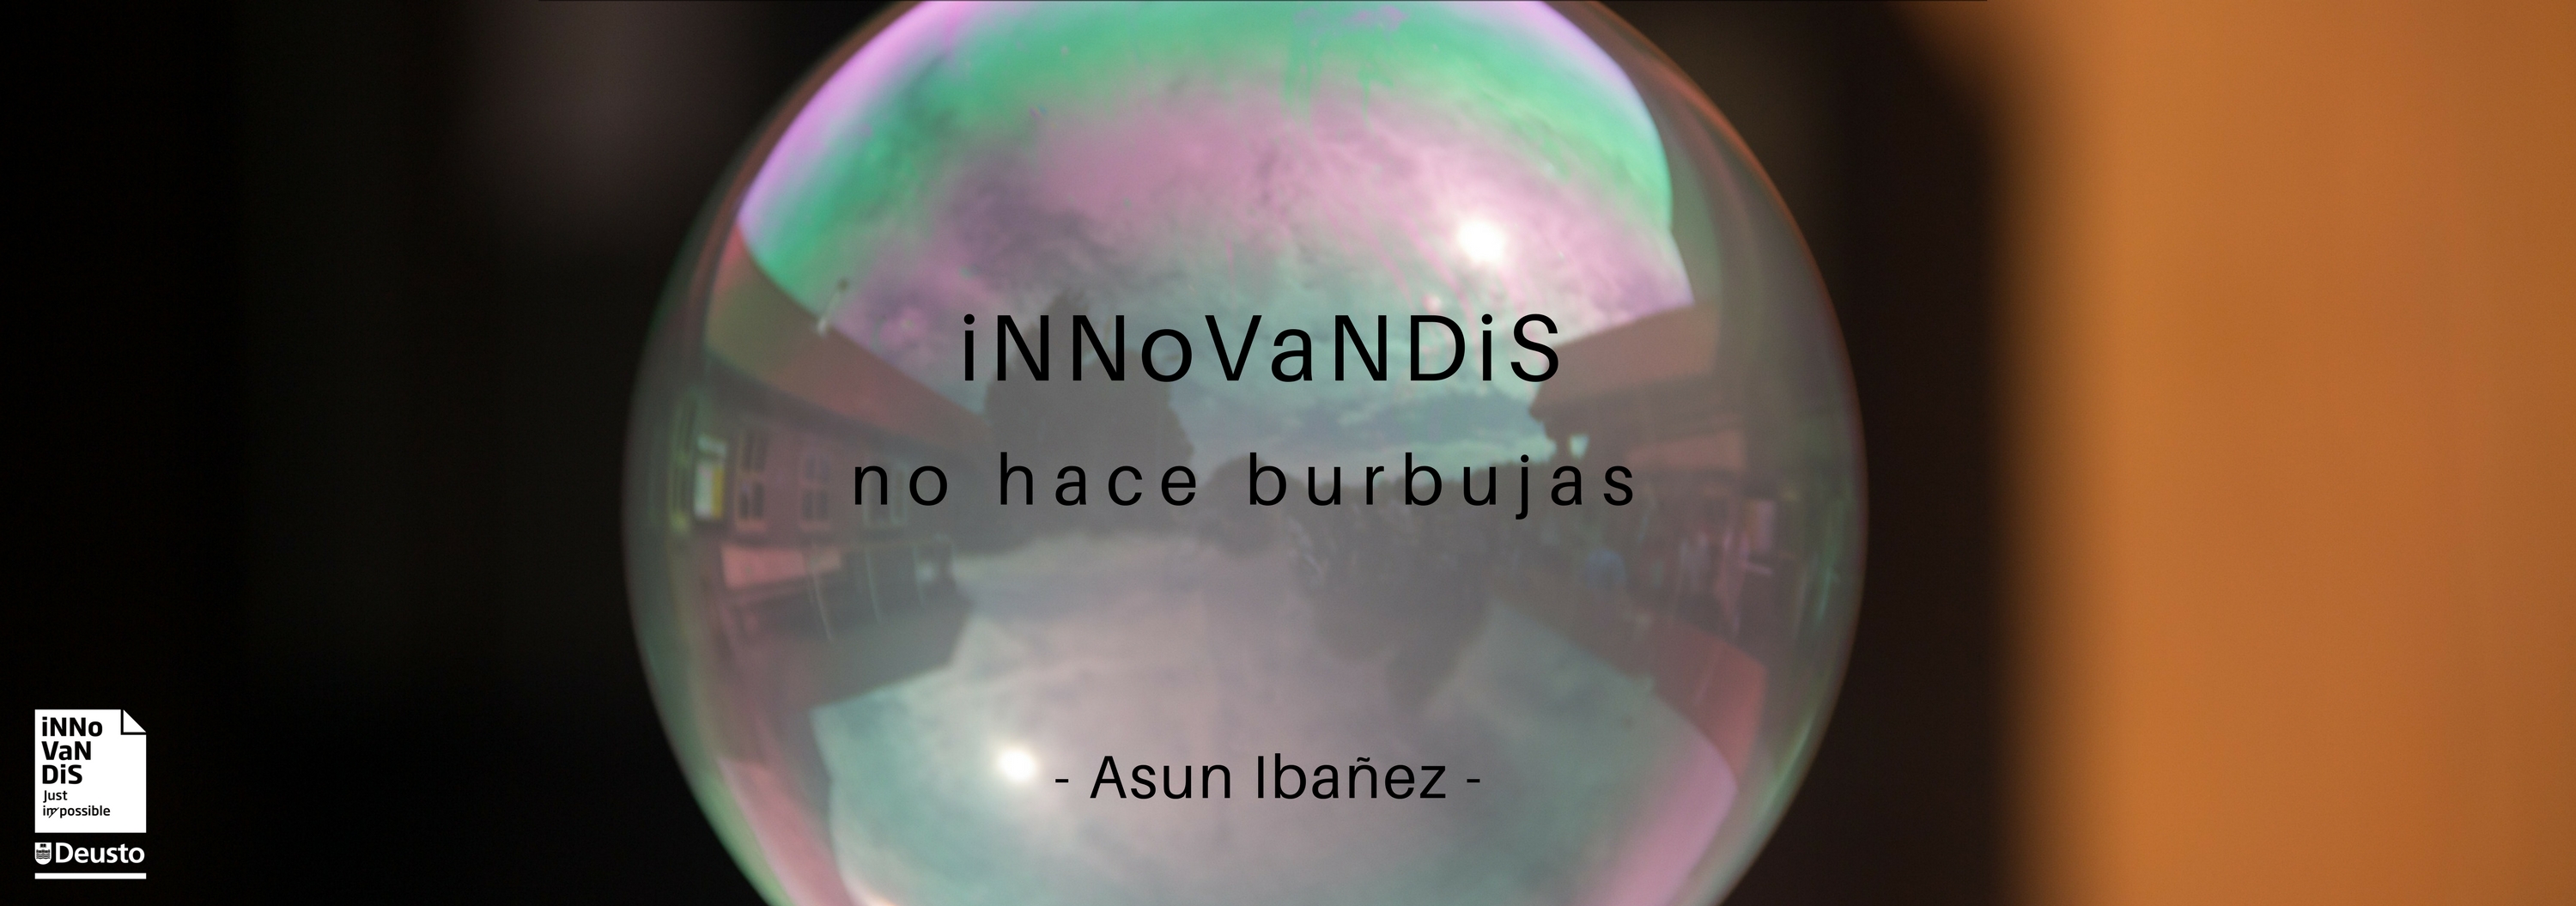 Innovandis no hace burbujas - Asun Ibañez